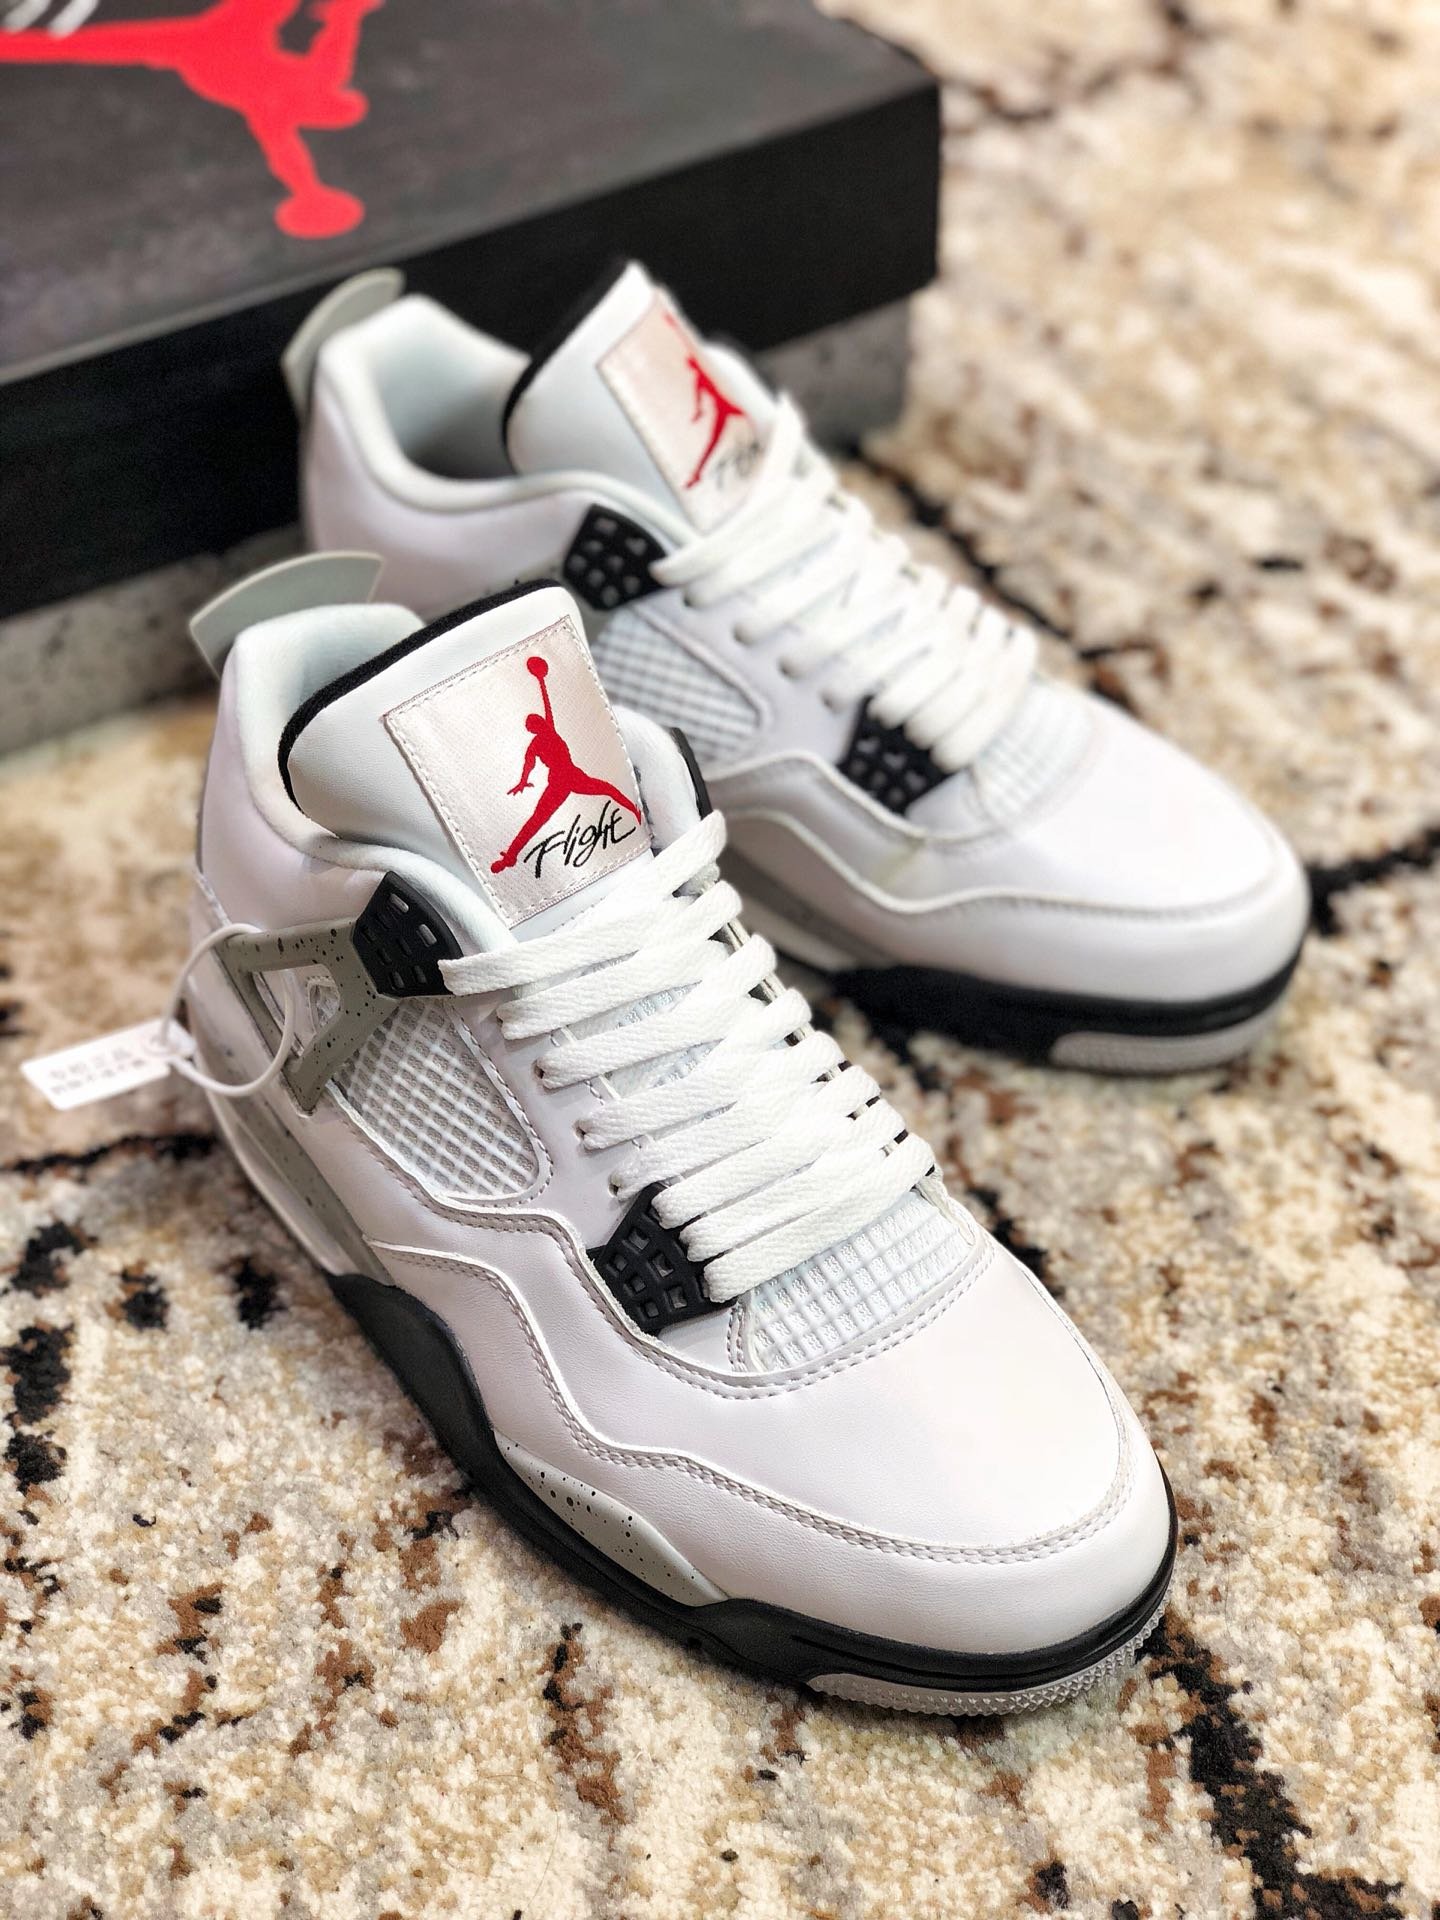 High Quality Air Jordan IV White Cement